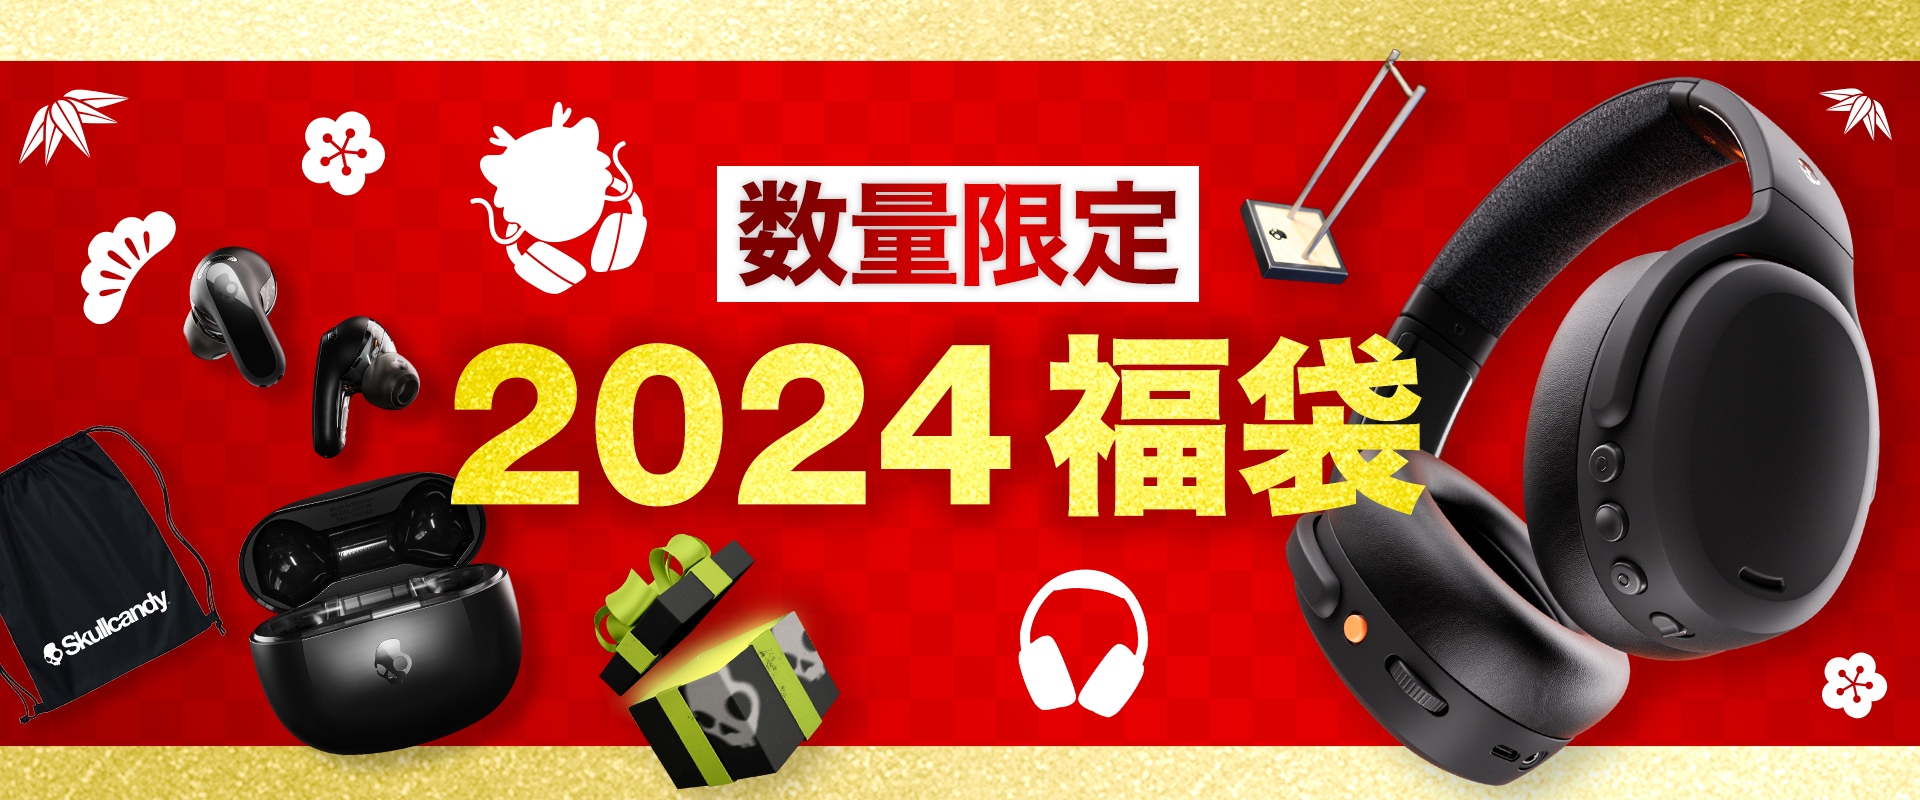 福袋2024 & SALE | スカルキャンディー公式サイト